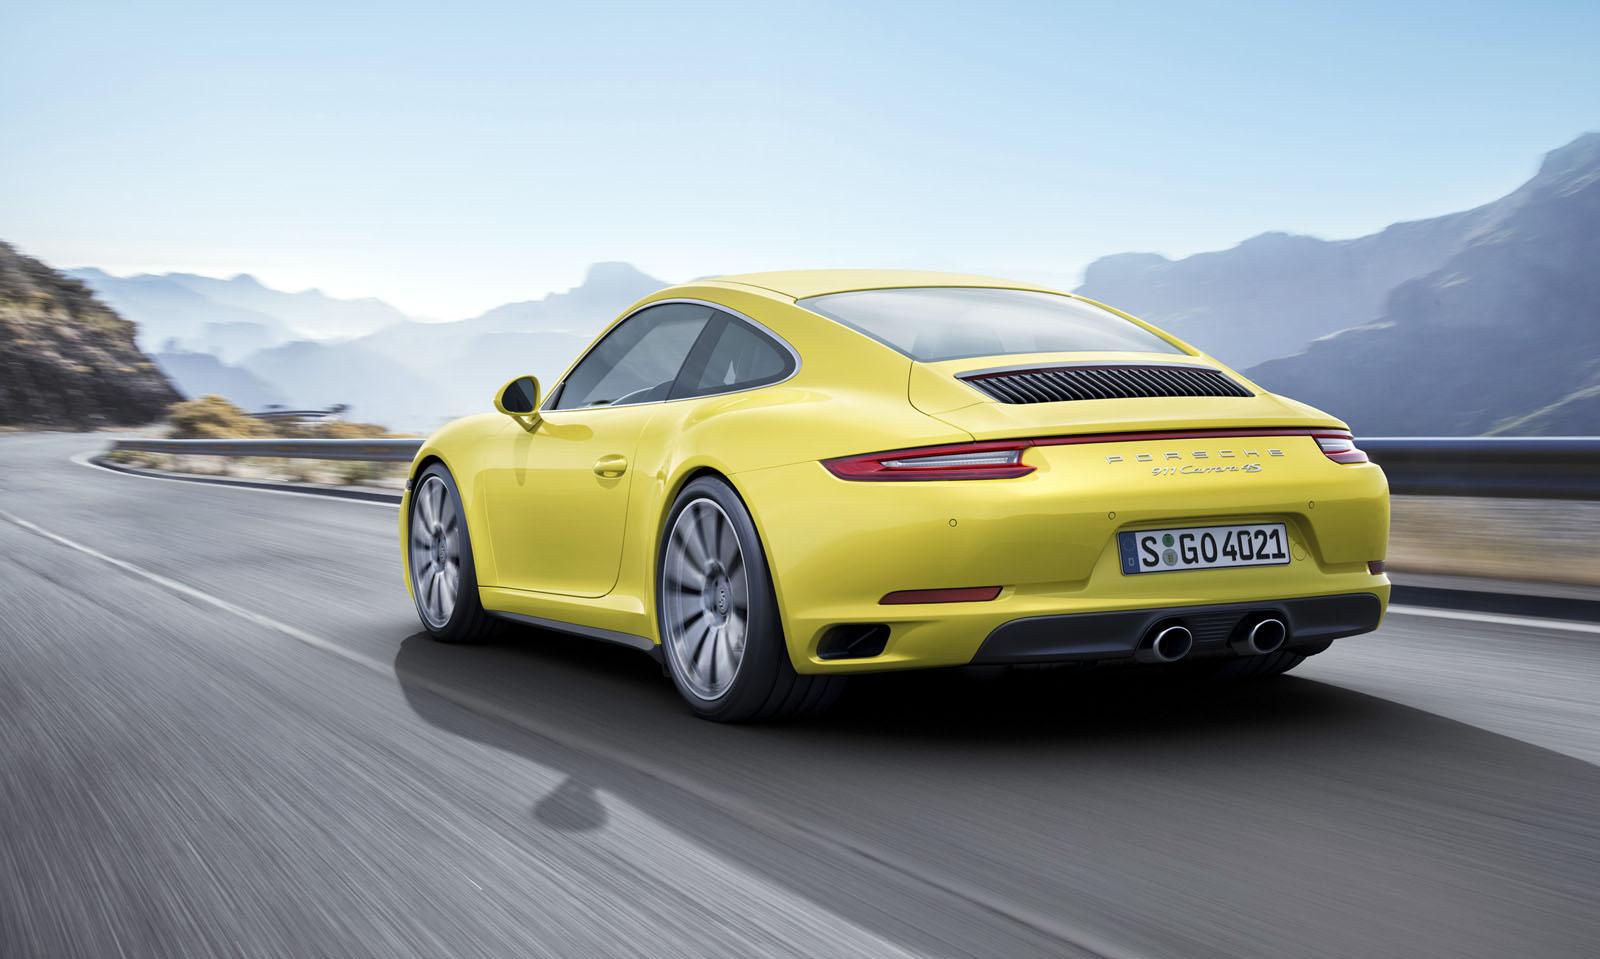 Tablero digital y tecnología híbrida para el nuevo Porsche 911 2018